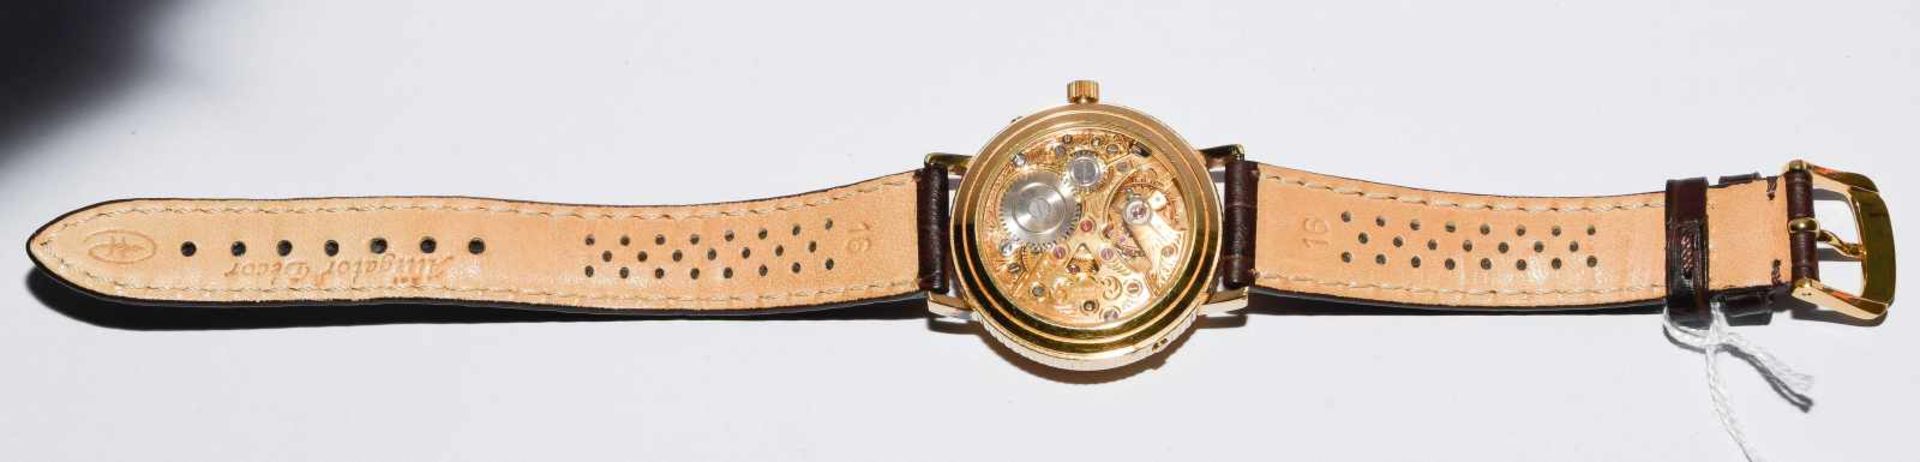 Benedict Super De LuxeRunde, mechanische Armbanduhr 60er Jahre mit Vollkalender und Handaufzug in - Bild 3 aus 7